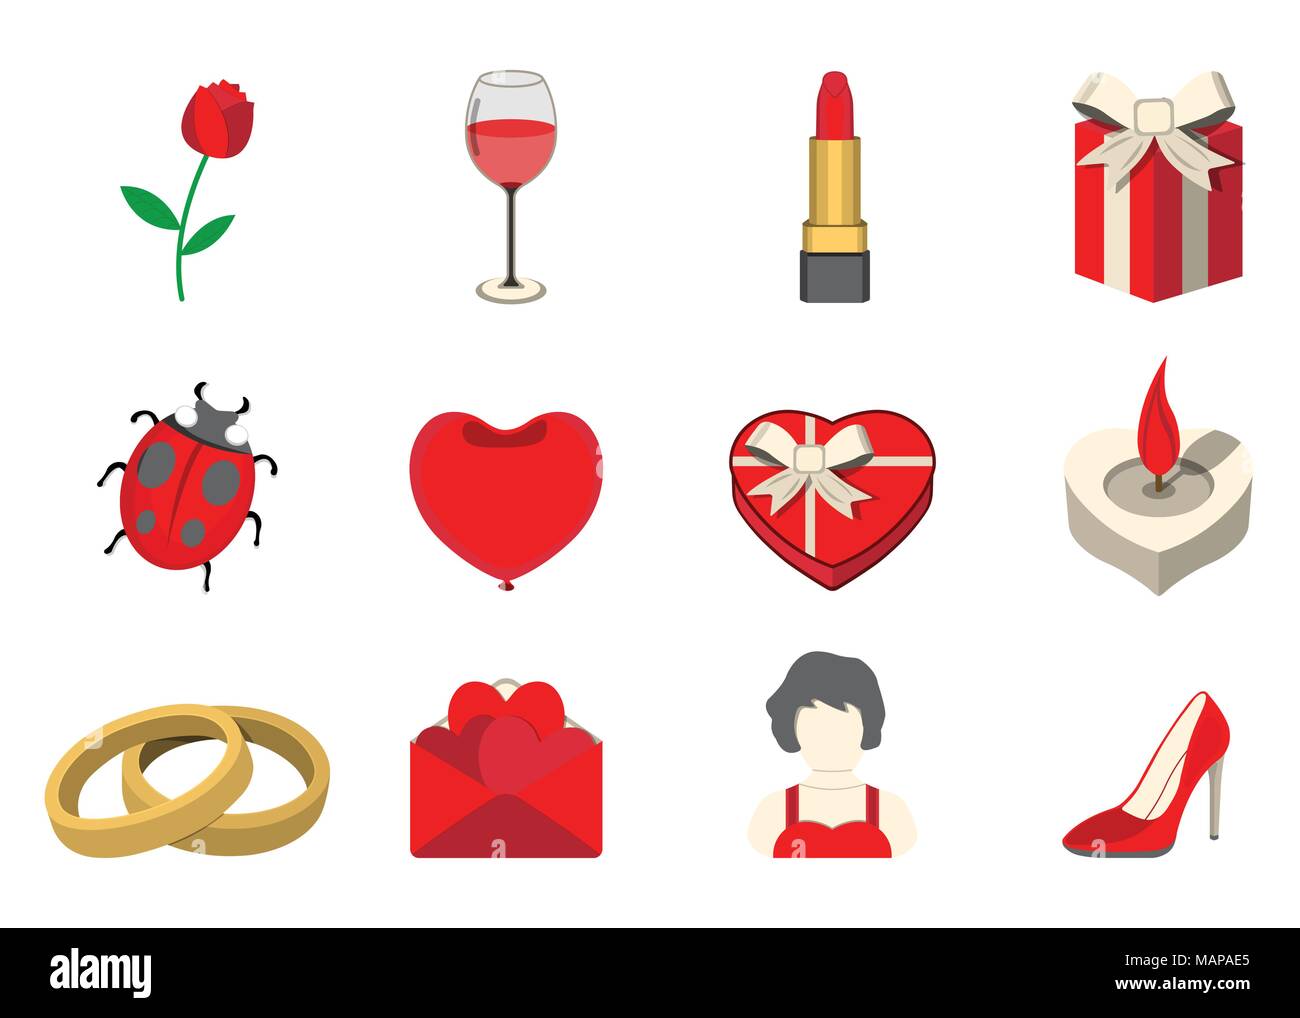 Einstellen der Liebe Symbol. Liebe und Geschenke für Web auf weißem Hintergrund. Flache Vector Illustration. Stock Vektor